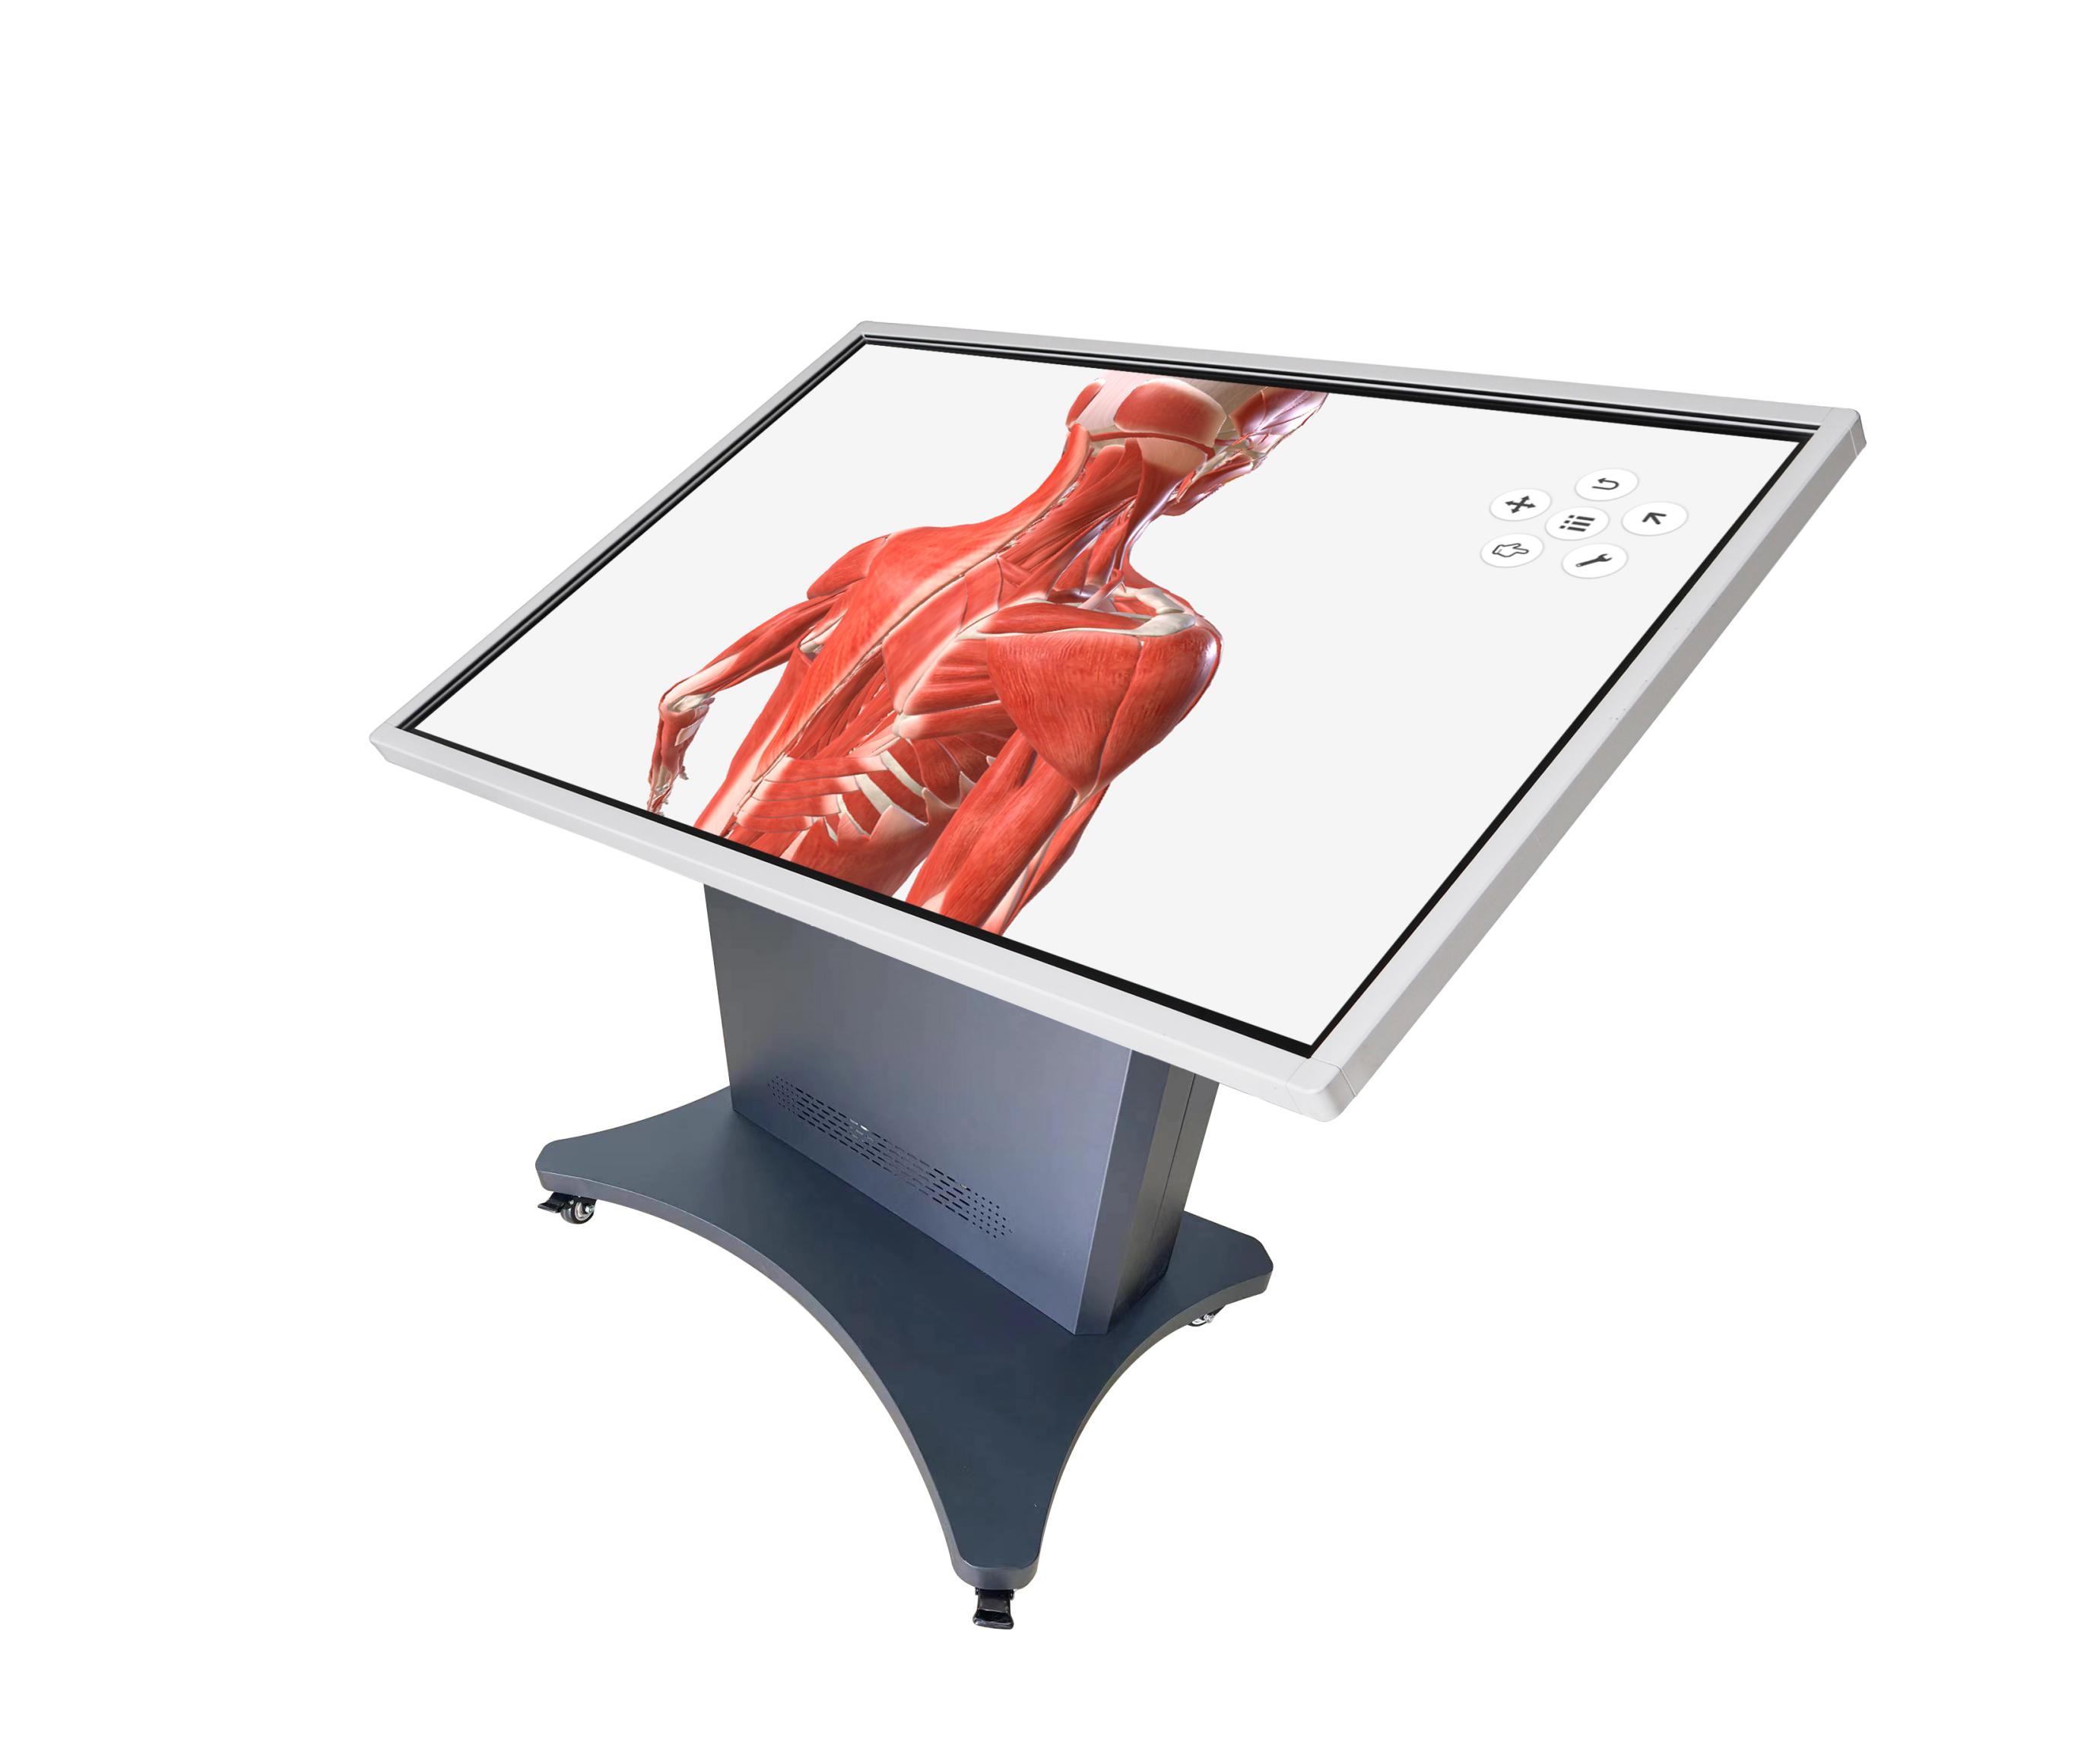 多點觸控解剖與手術規劃訓練系統，多點觸控虛擬解剖訓練系統